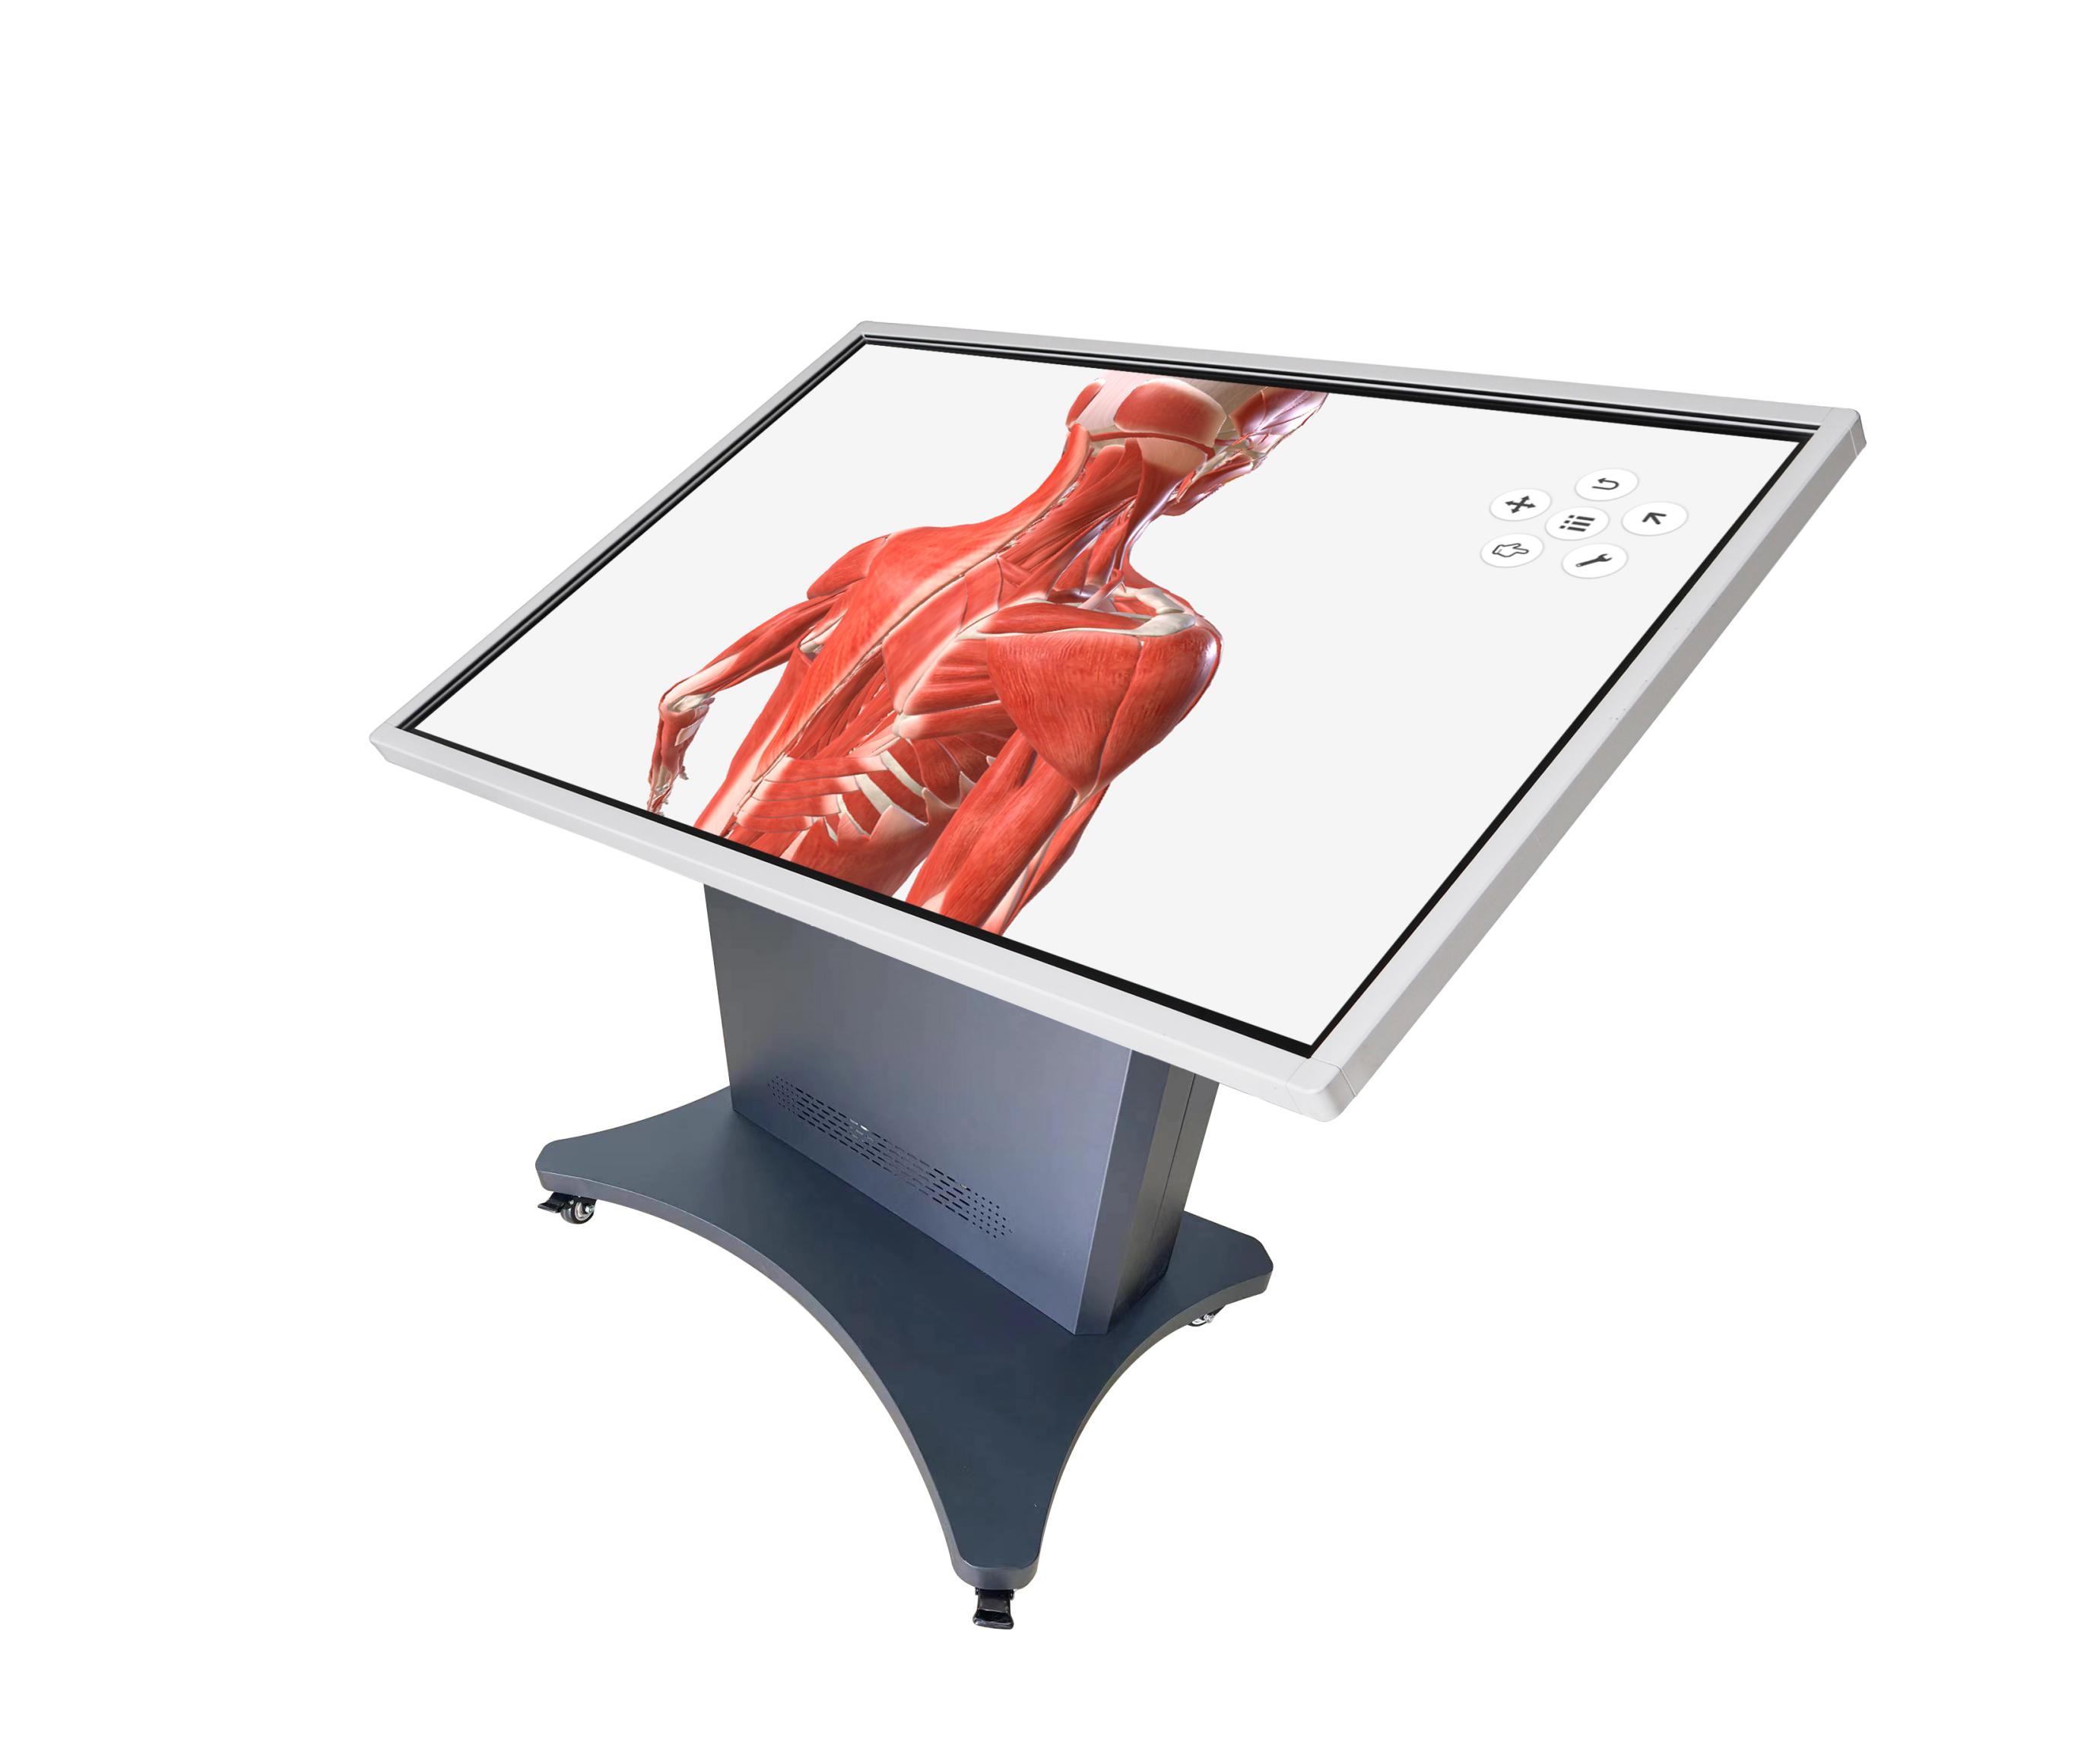 多點觸控解剖與手術規劃訓練系統，多點觸控虛擬解剖訓練系統